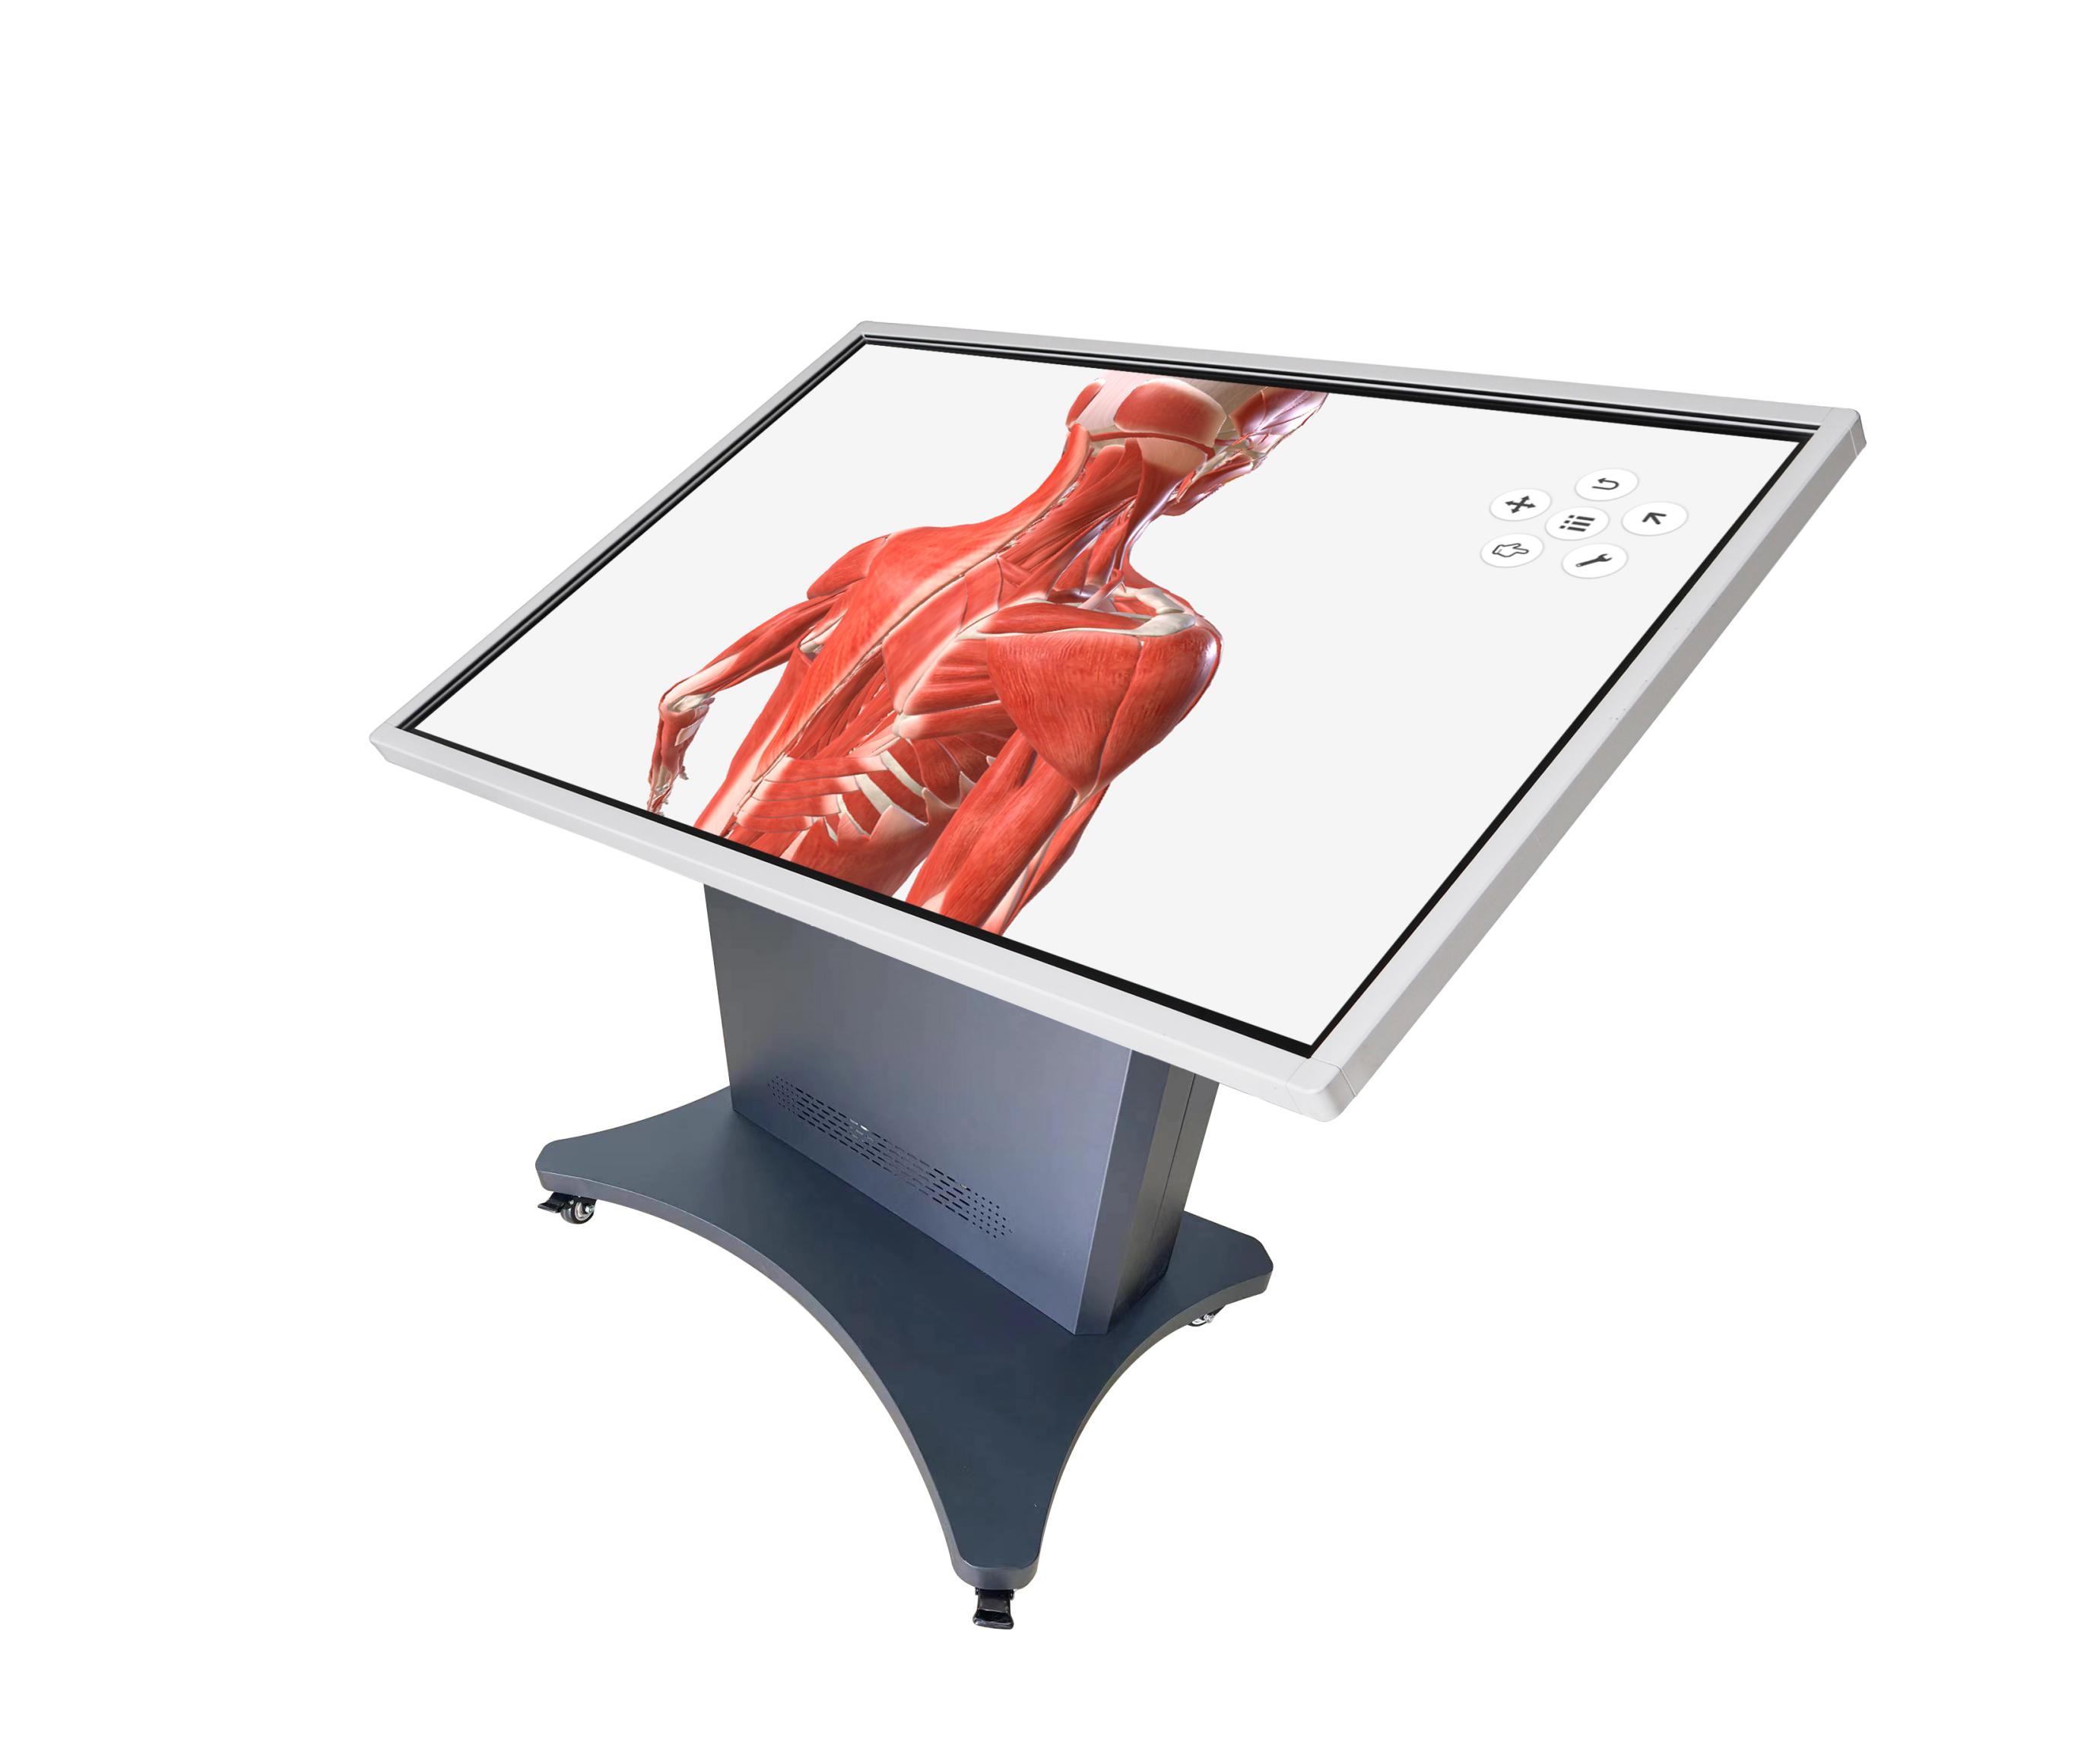 多點觸控解剖與手術規劃訓練系統，多點觸控虛擬解剖訓練系統